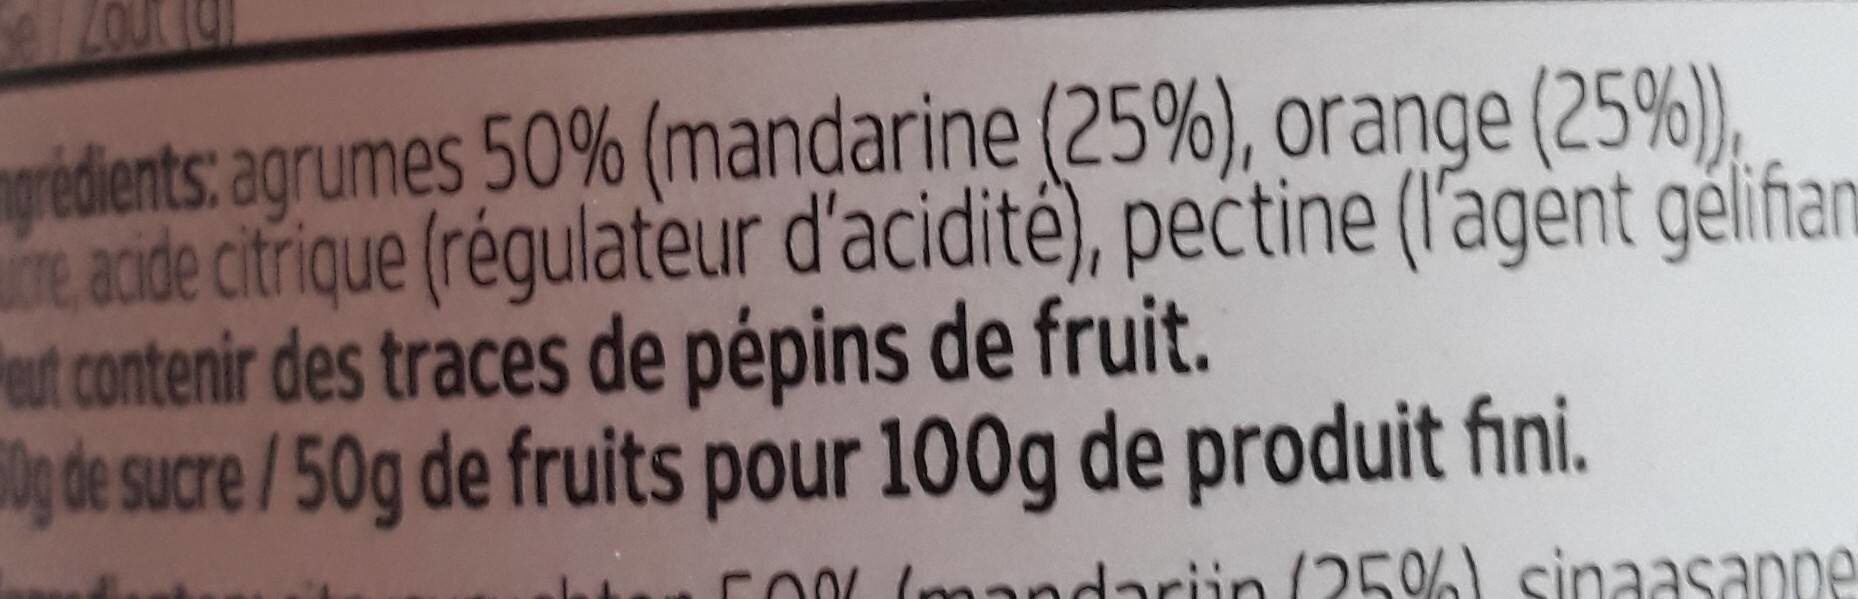 Marmelade de mandarine et d'orange - Ingrediënten - fr